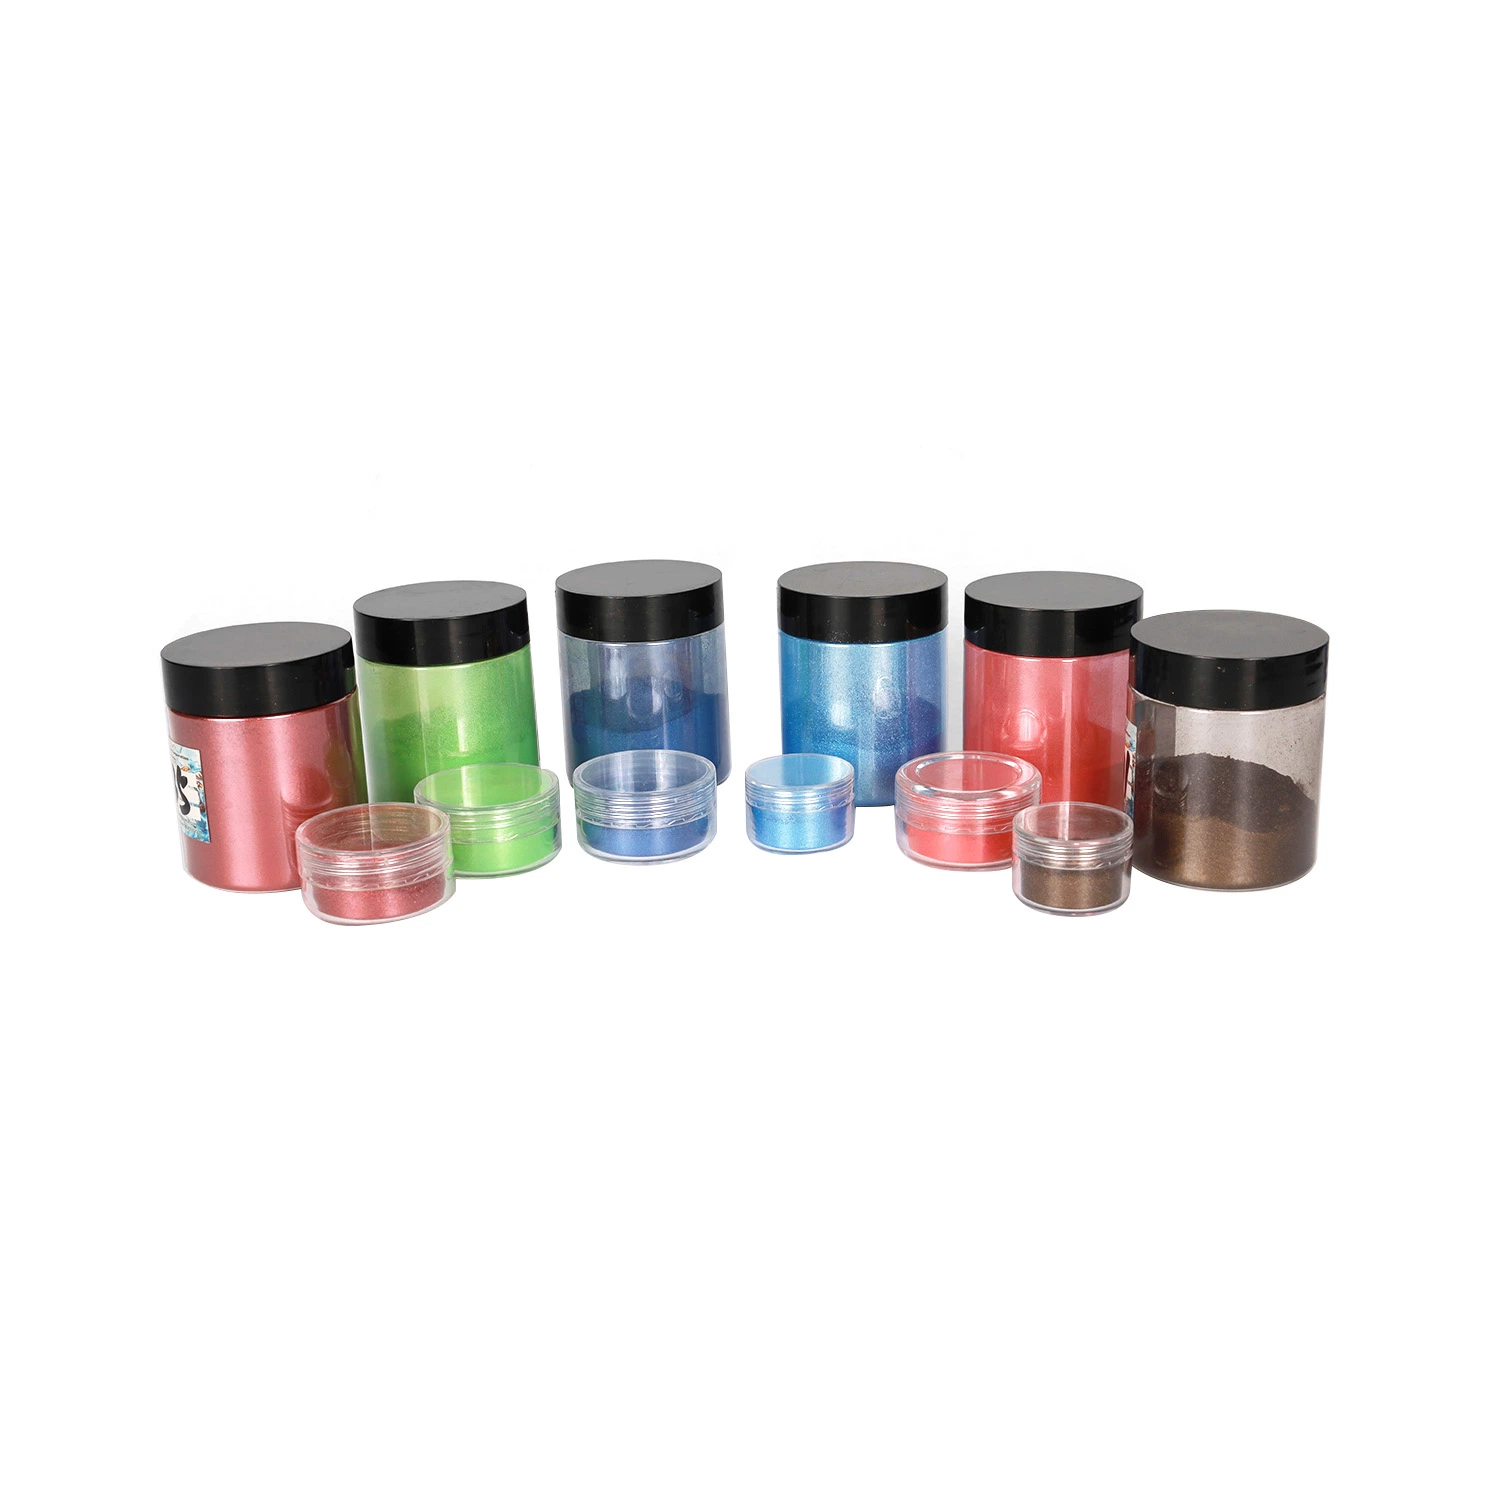 CNMI Epoxy Resin Pigment for Lip Gloss, Cosmetic, Candle, Soap Colorant Mica Powder Pearl Powder Pigment Powder